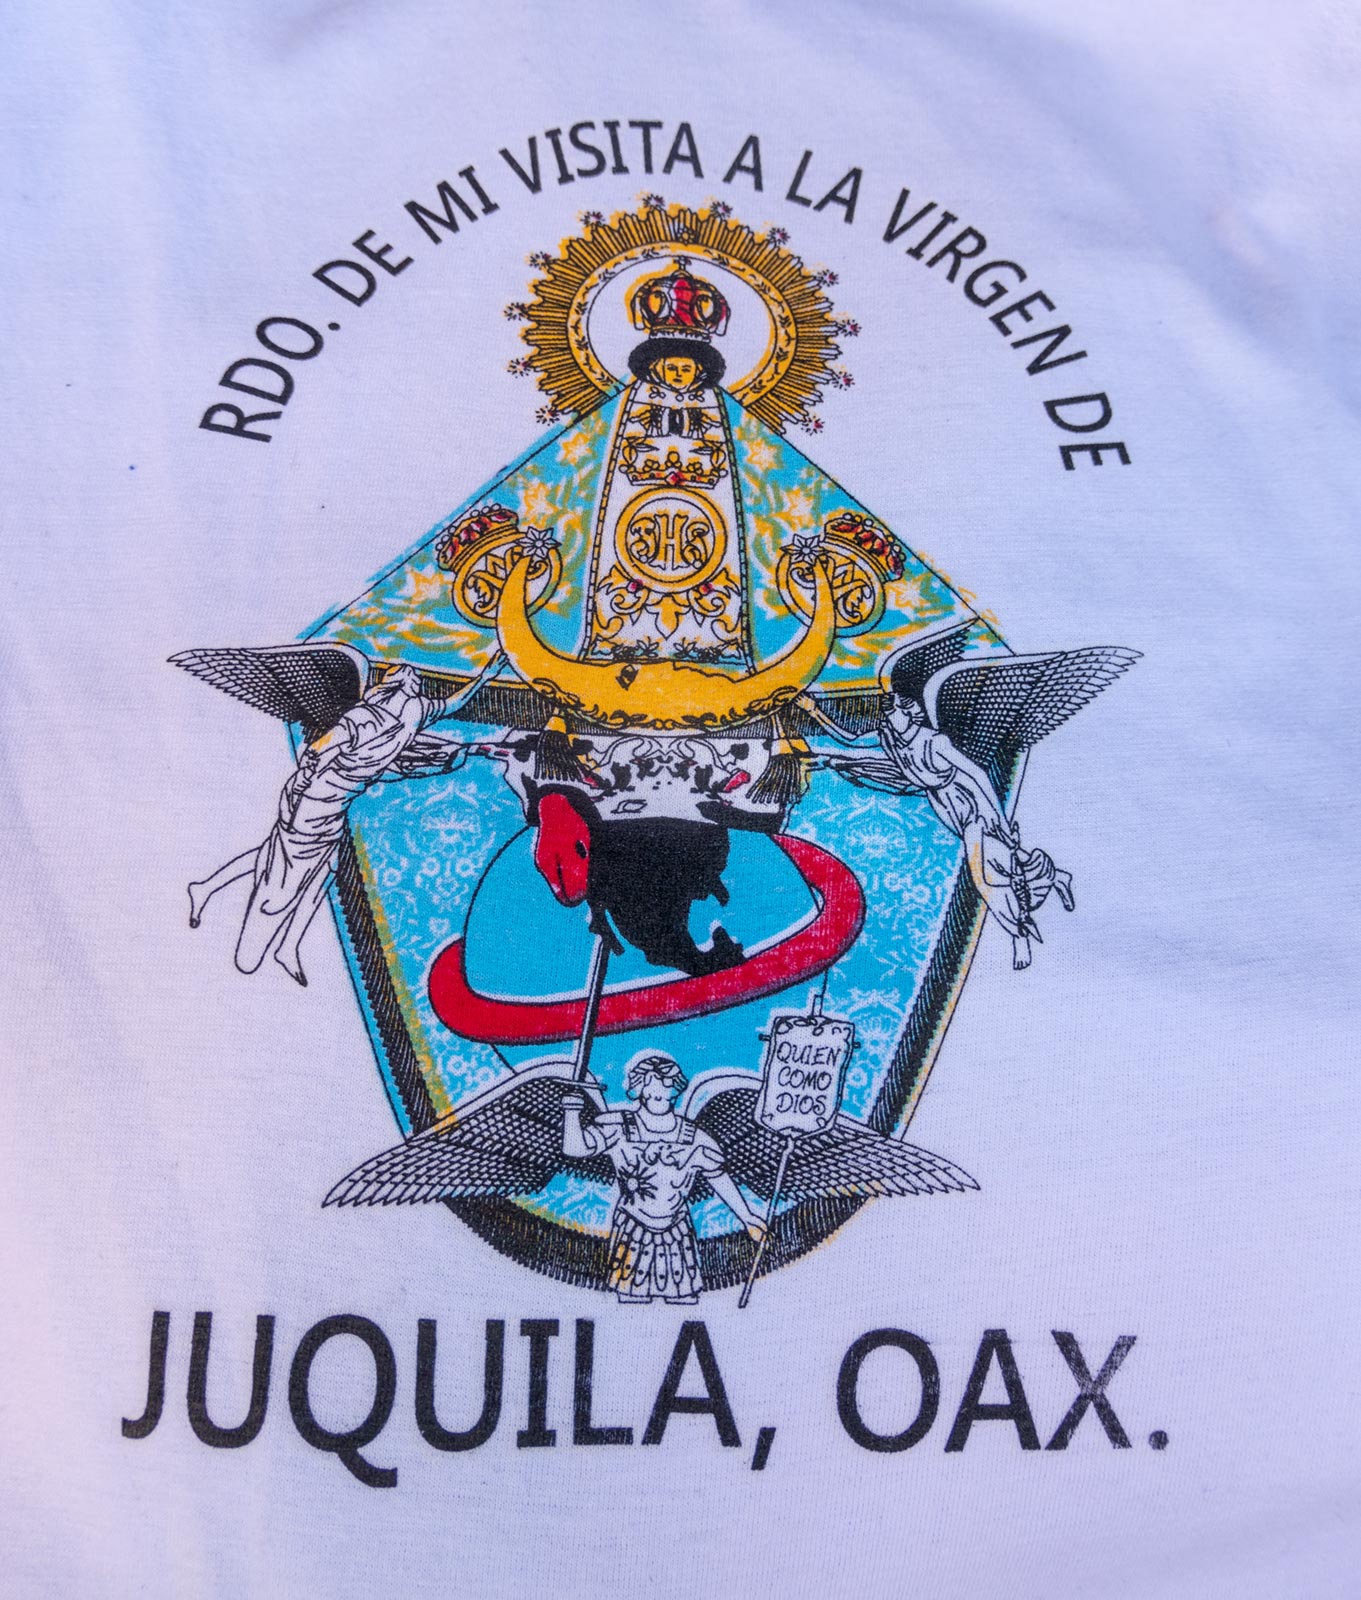 Bild av en mirakulös staty av Jungfru Maria på t-shirt, till salu på marknaden nära Jungfru Mariakyrkan, Juquila